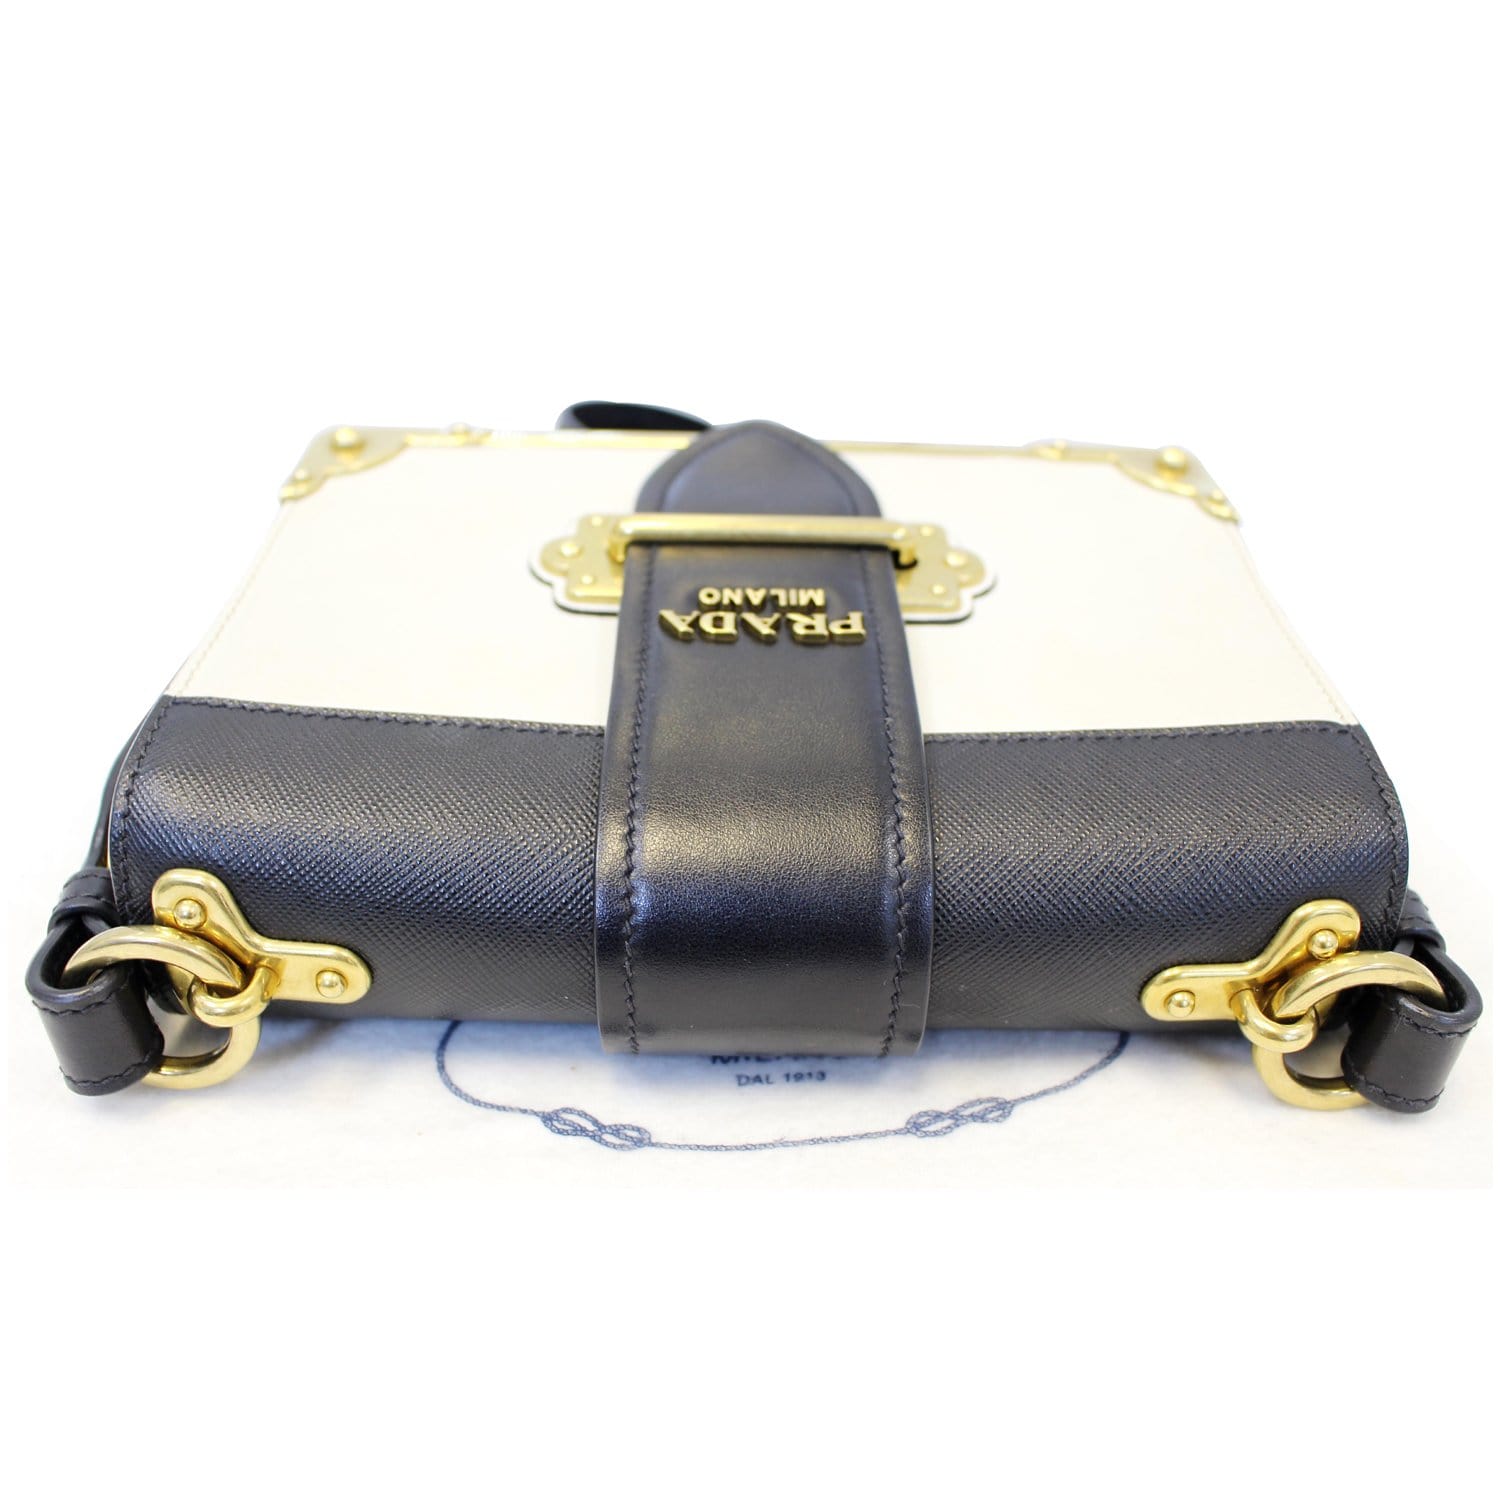 Prada Saffiano City Calf Cahier Astrology Bag